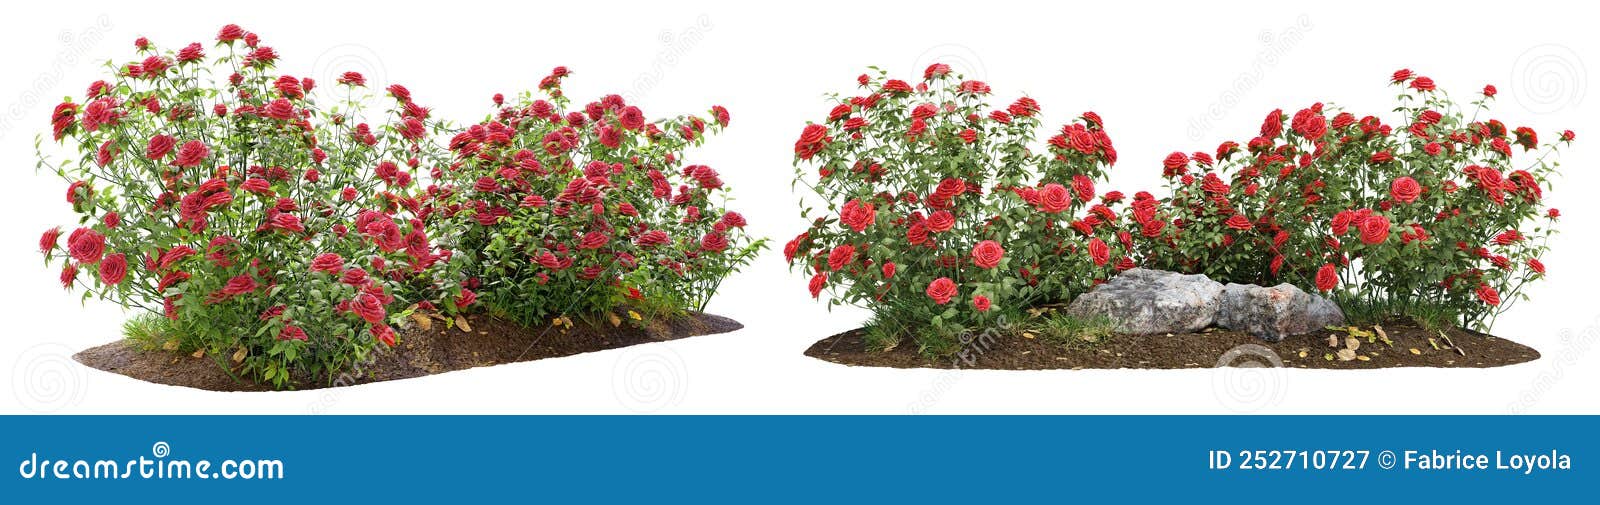 bush of red roses for garden 